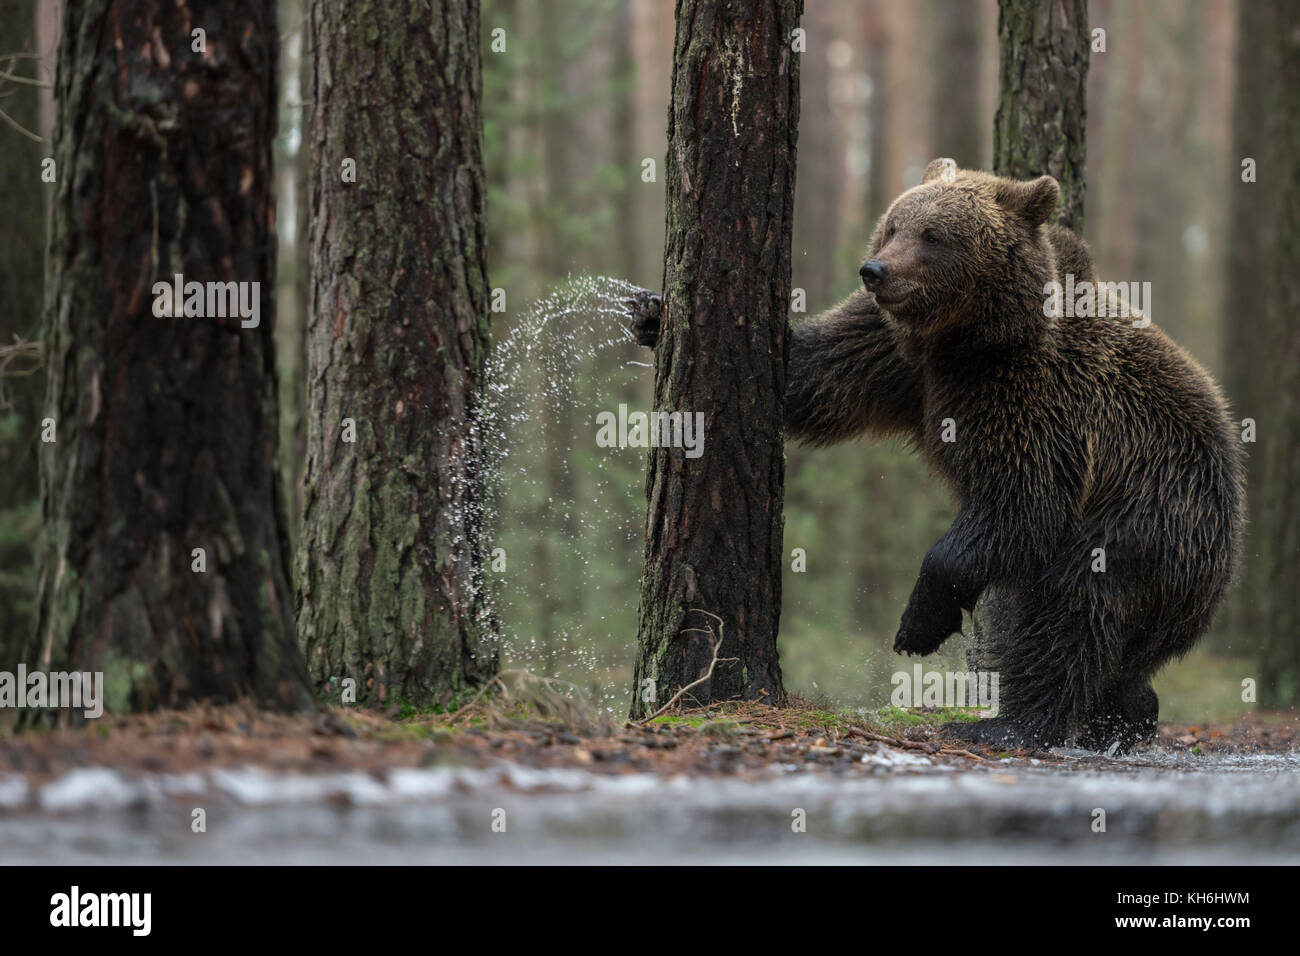 Europäischer Braunbär ( Ursus arctos ), jung, auf Hinterbeinen neben einer gefrorenen Pfütze stehend, Boxen, mit einem Baum kämpfen, sieht lustig aus, Europa. Stockfoto